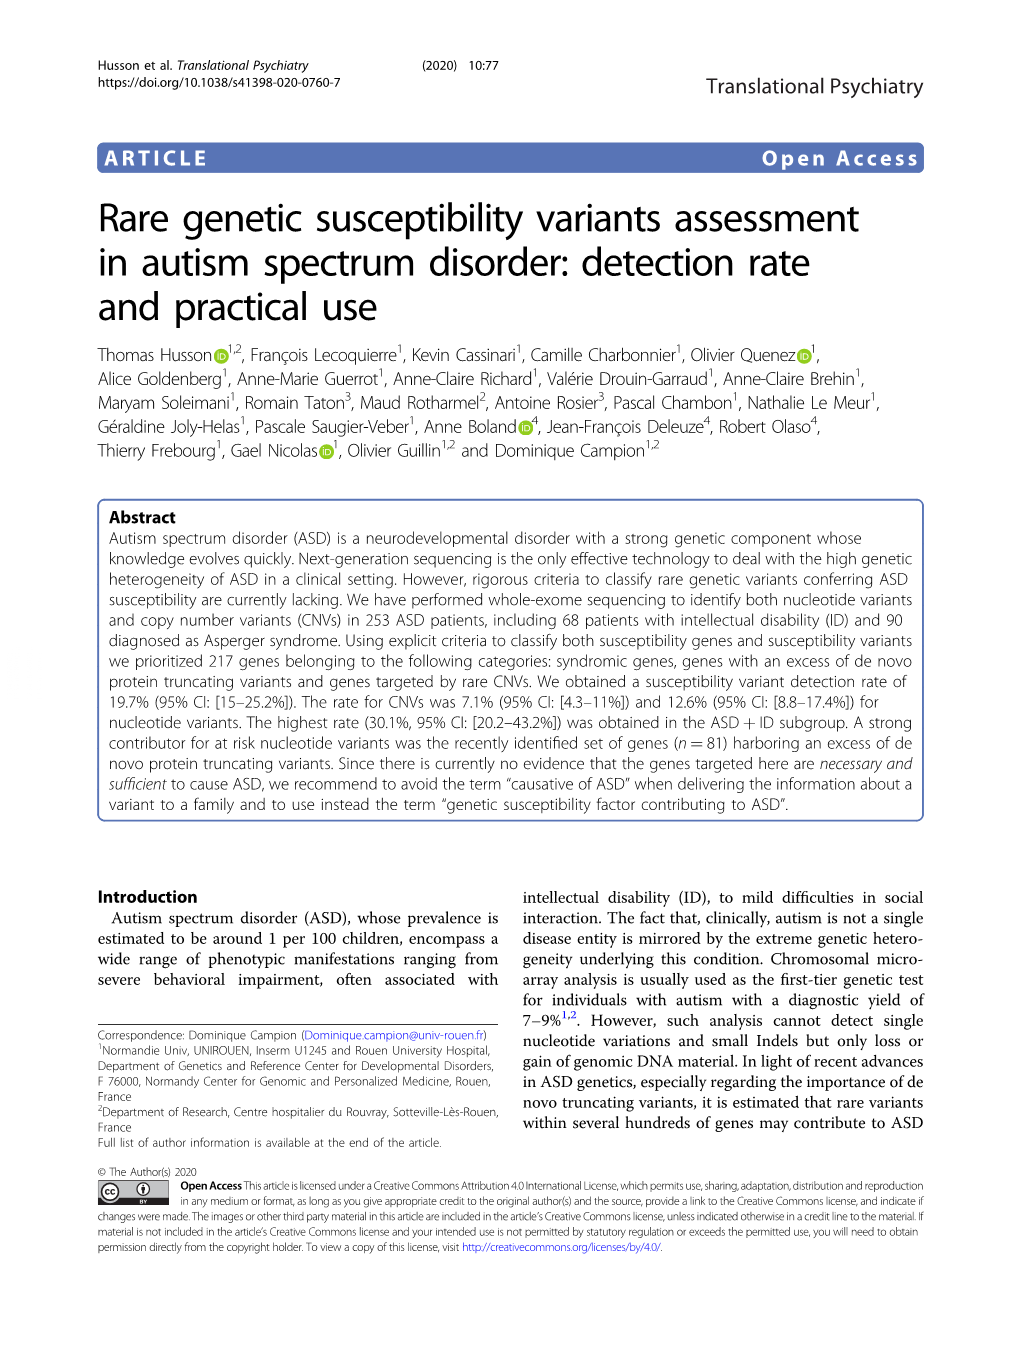 Rare Genetic Susceptibility Variants Assessment in Autism Spectrum